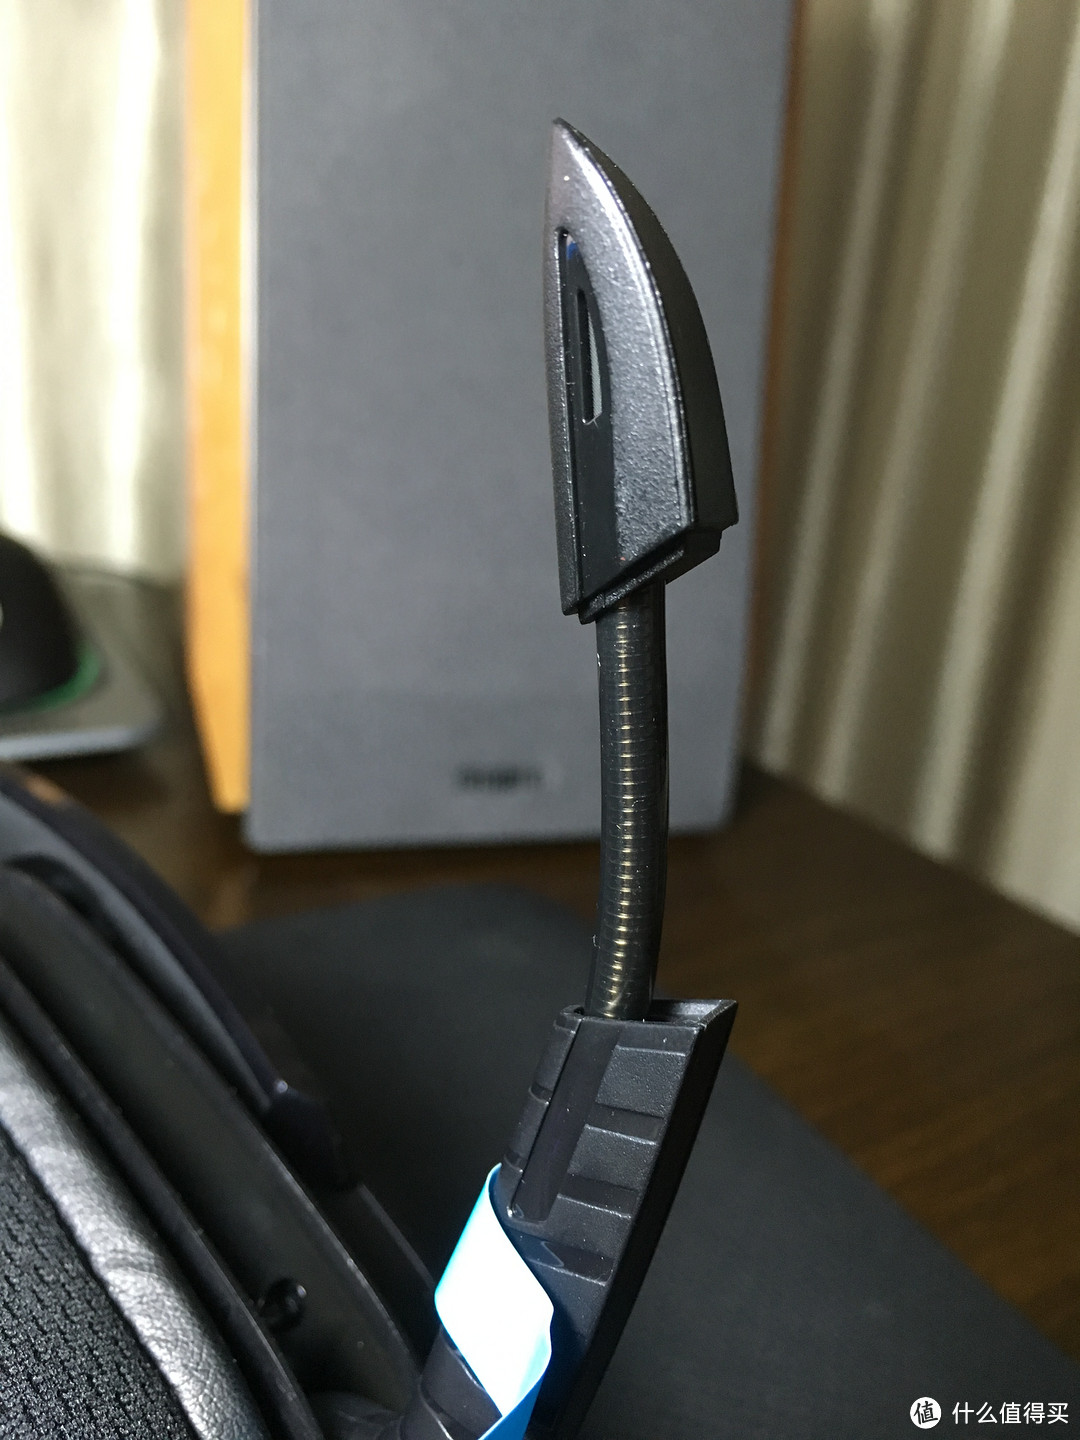 带光而来的罗技游戏耳机新旗舰【G633 RGB 7.1 环绕声游戏耳机麦克风】